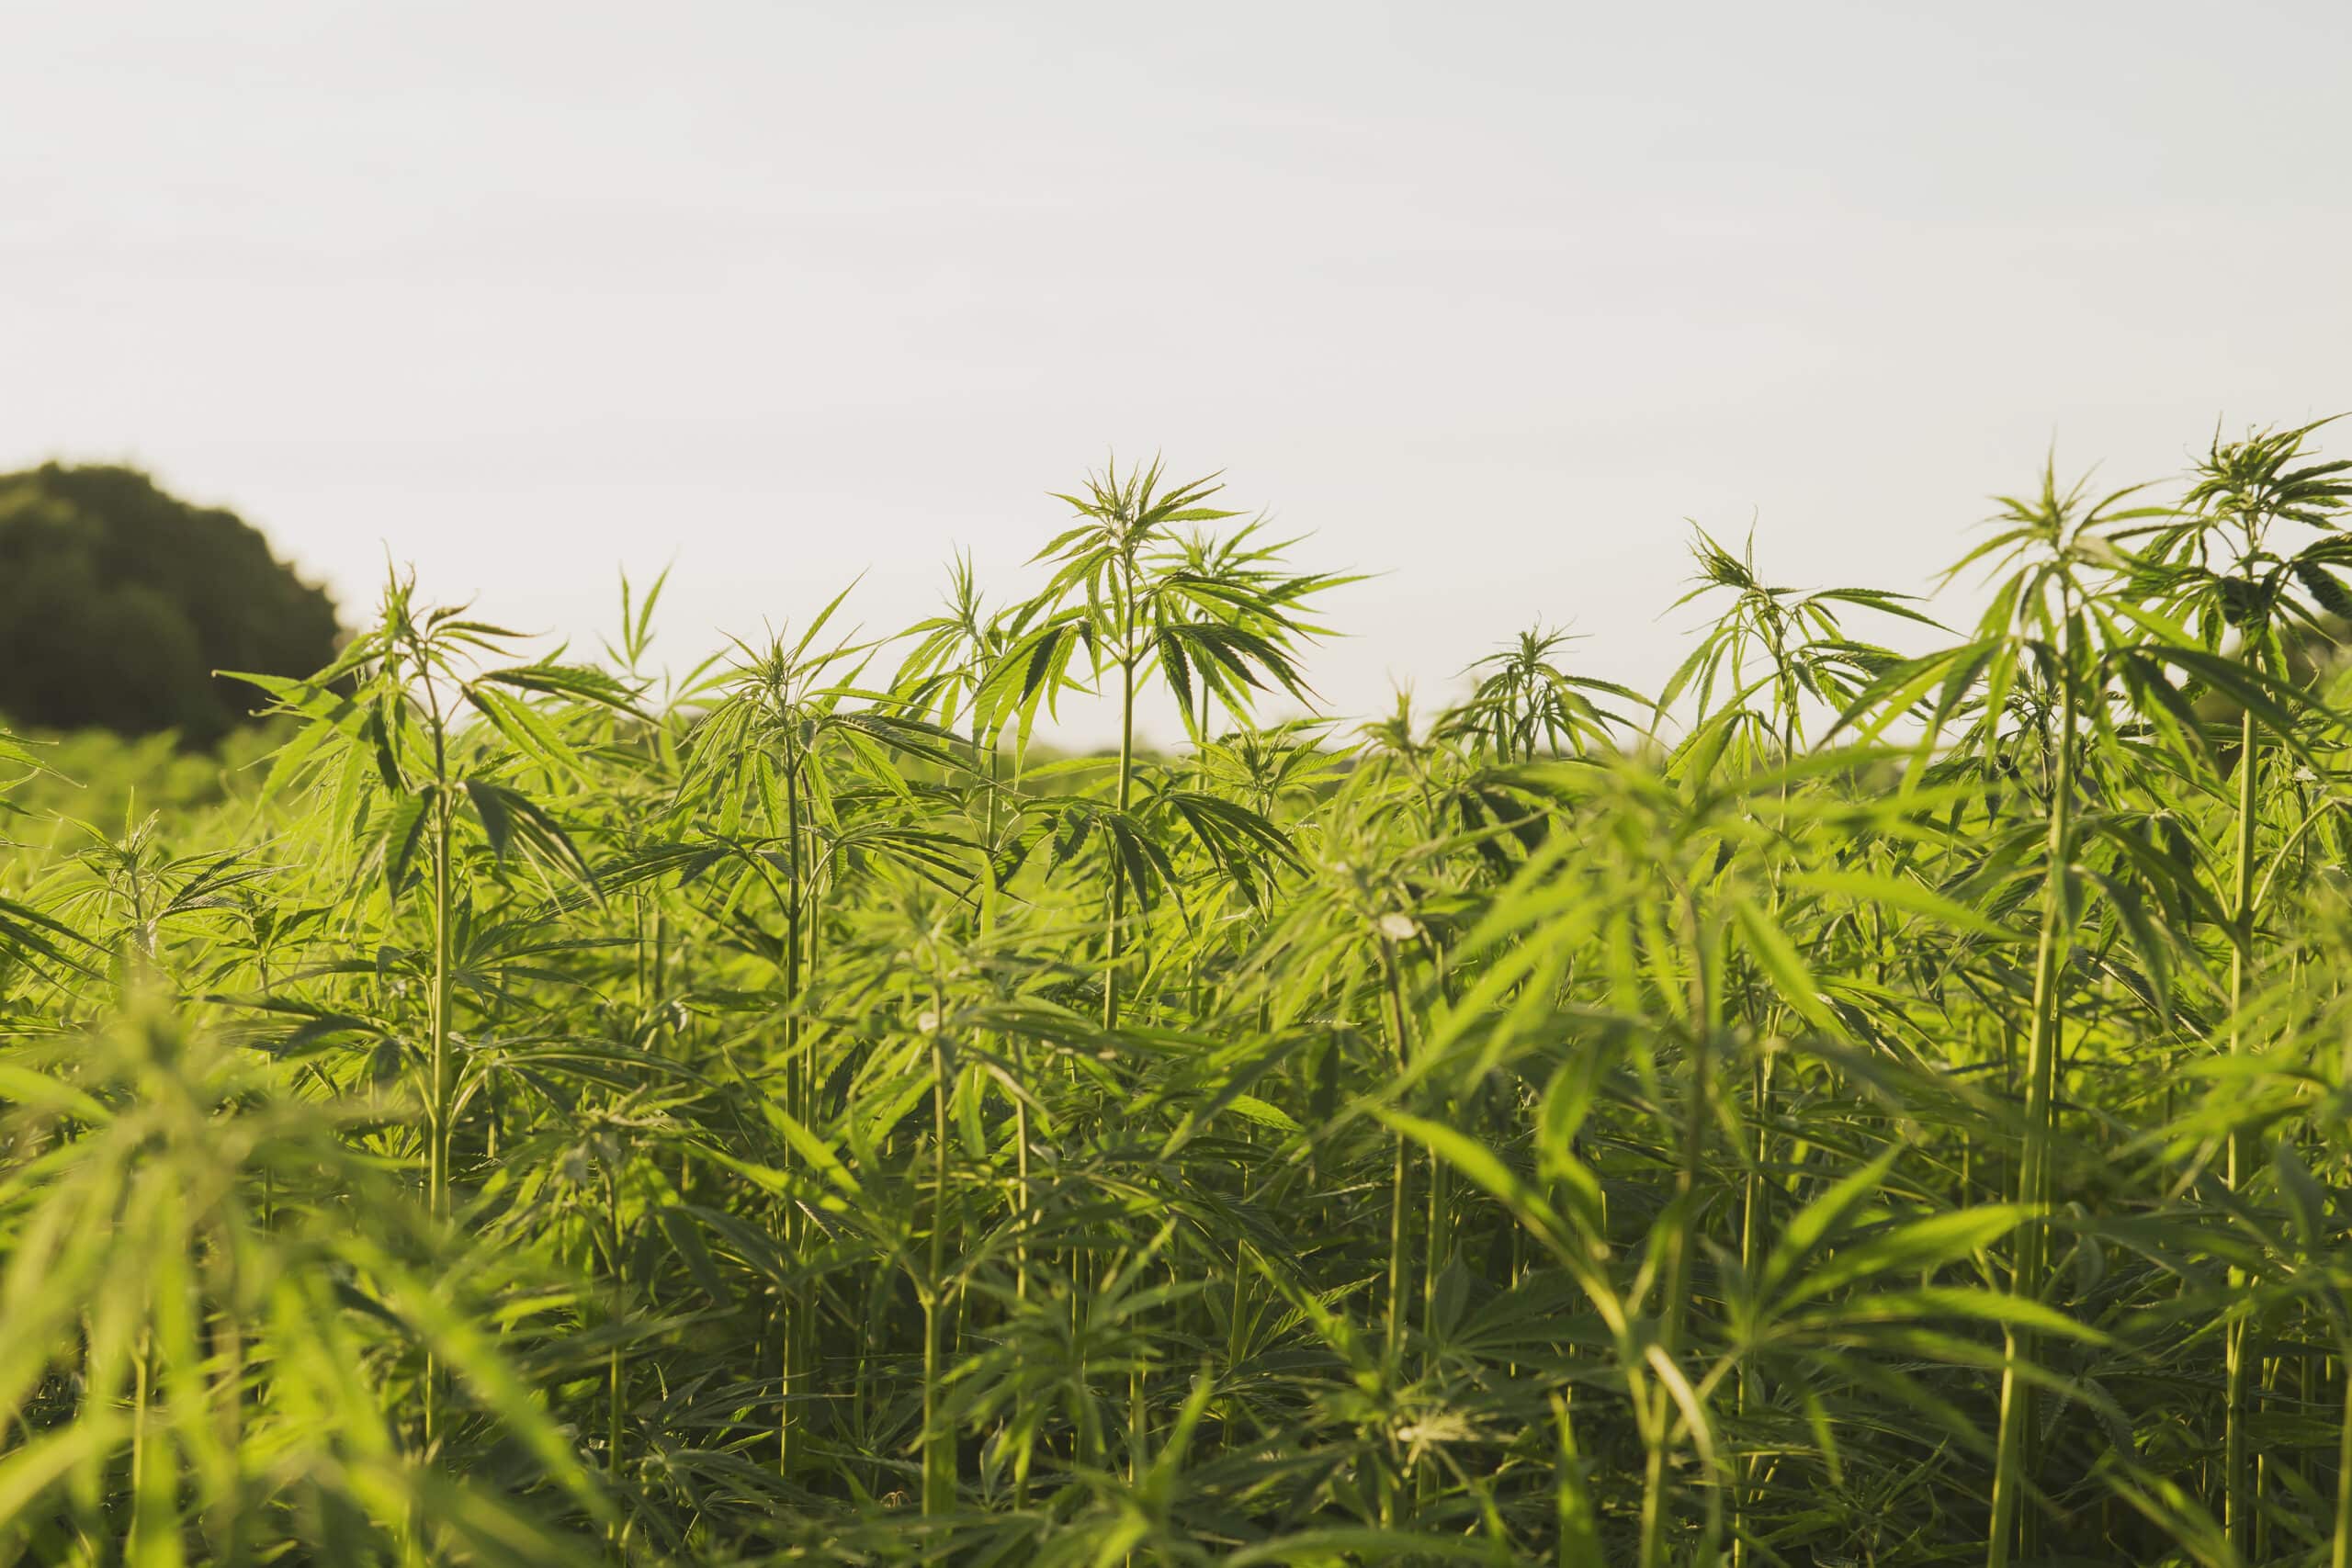 Industrial hemp or cannabis farm plantation in the rural belgium